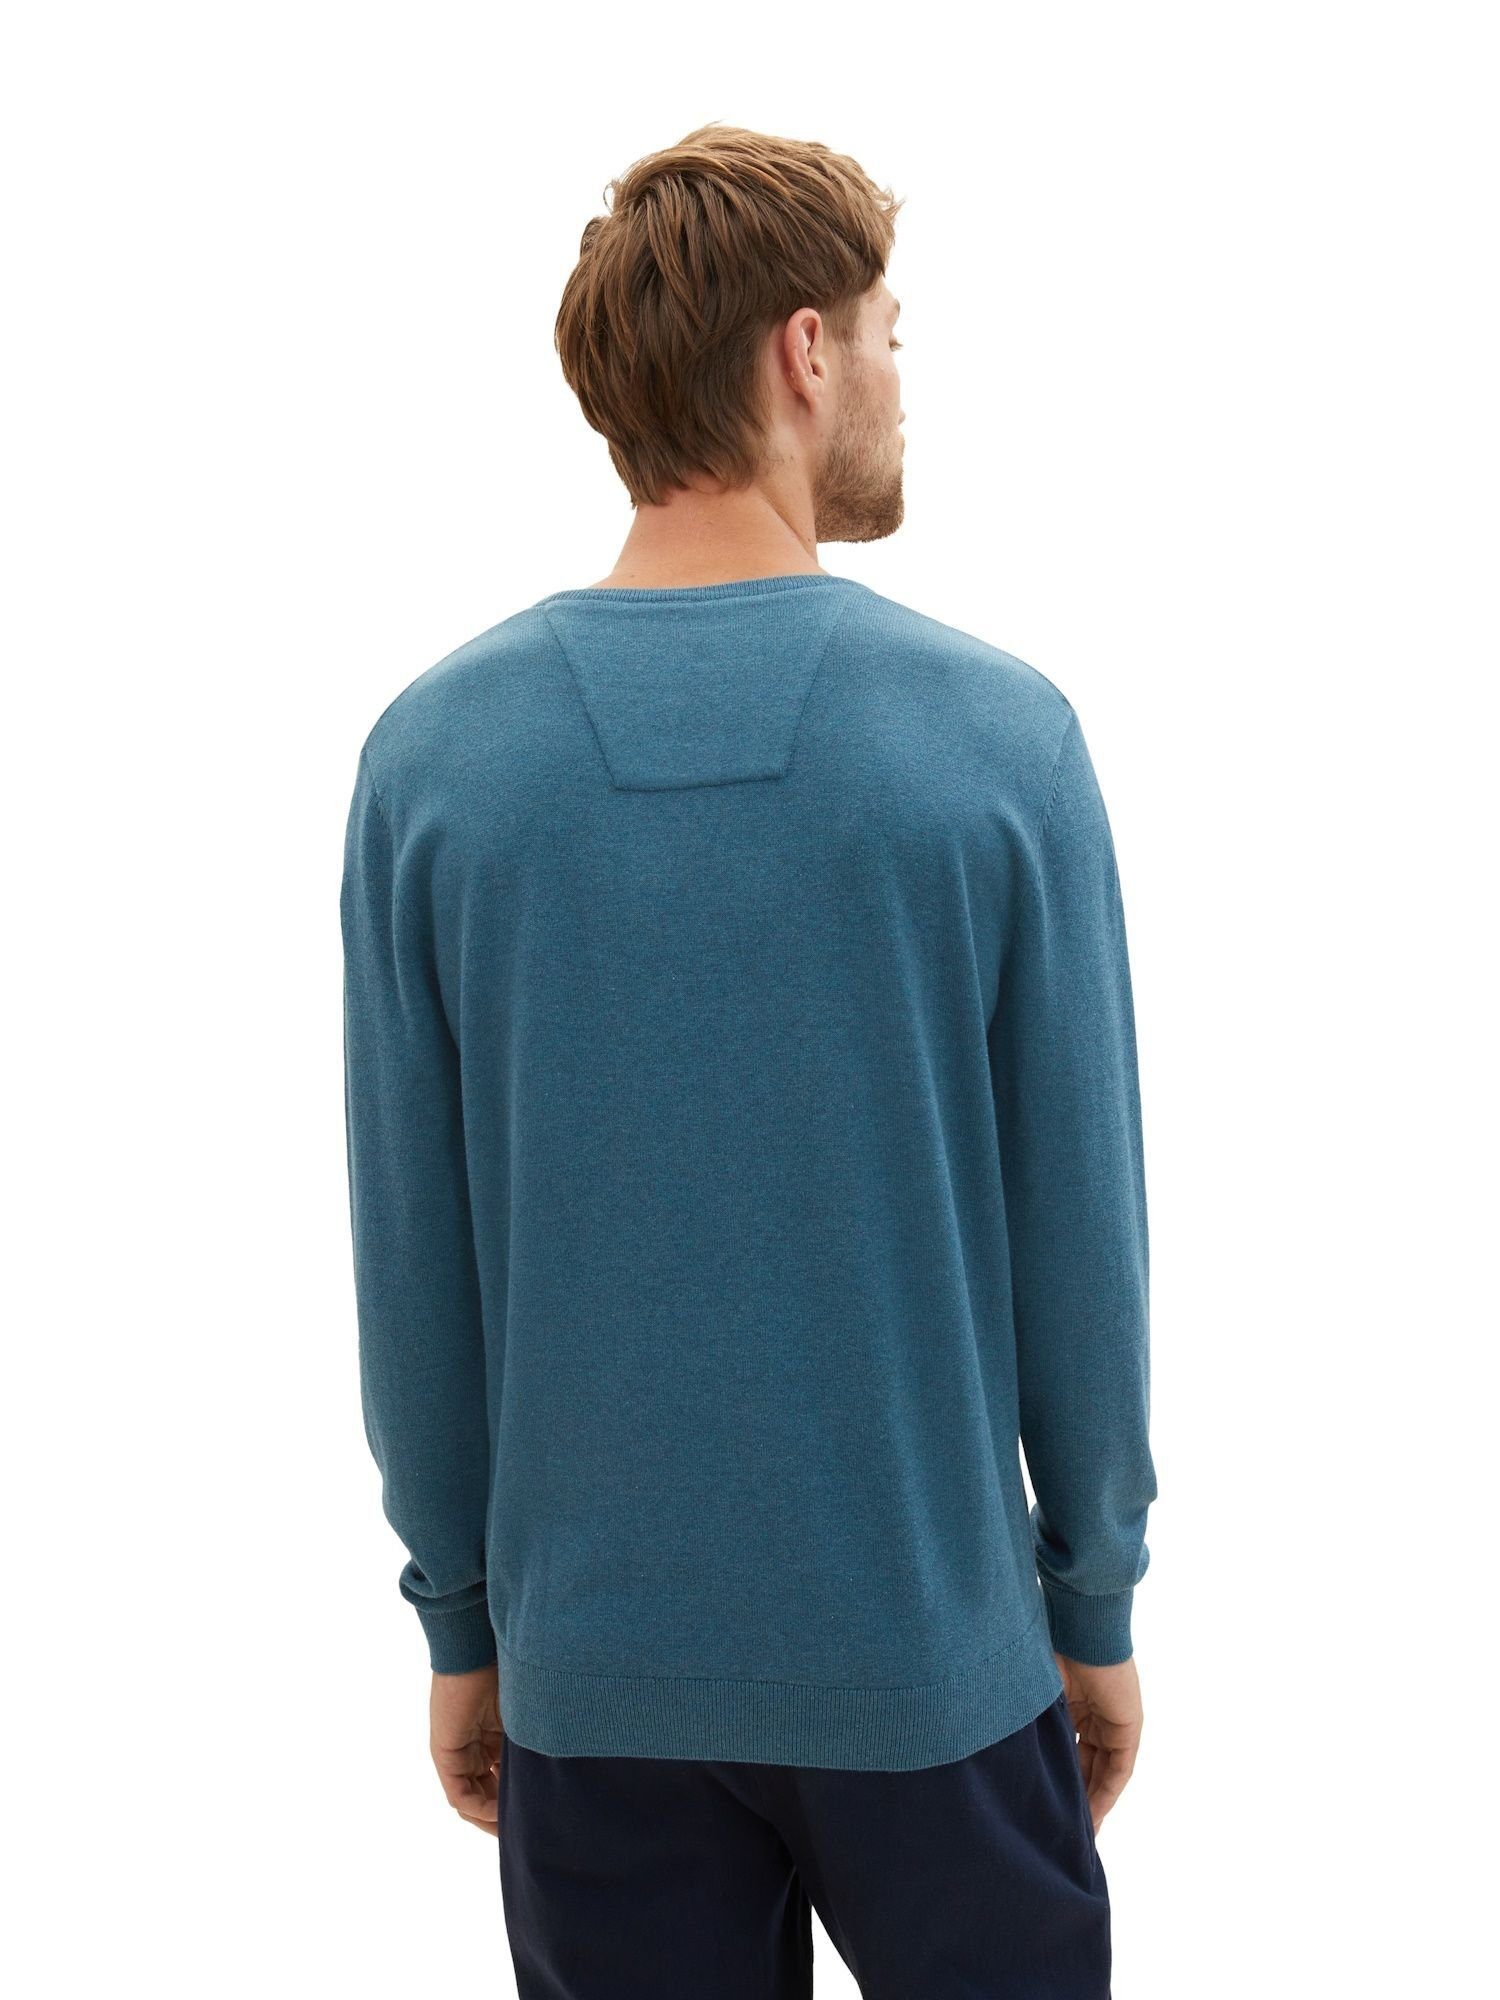 TOM TAILOR Sweatshirt Sweatshirt Pullover melange dark mit meliert green Rippbündchen (1-tlg)